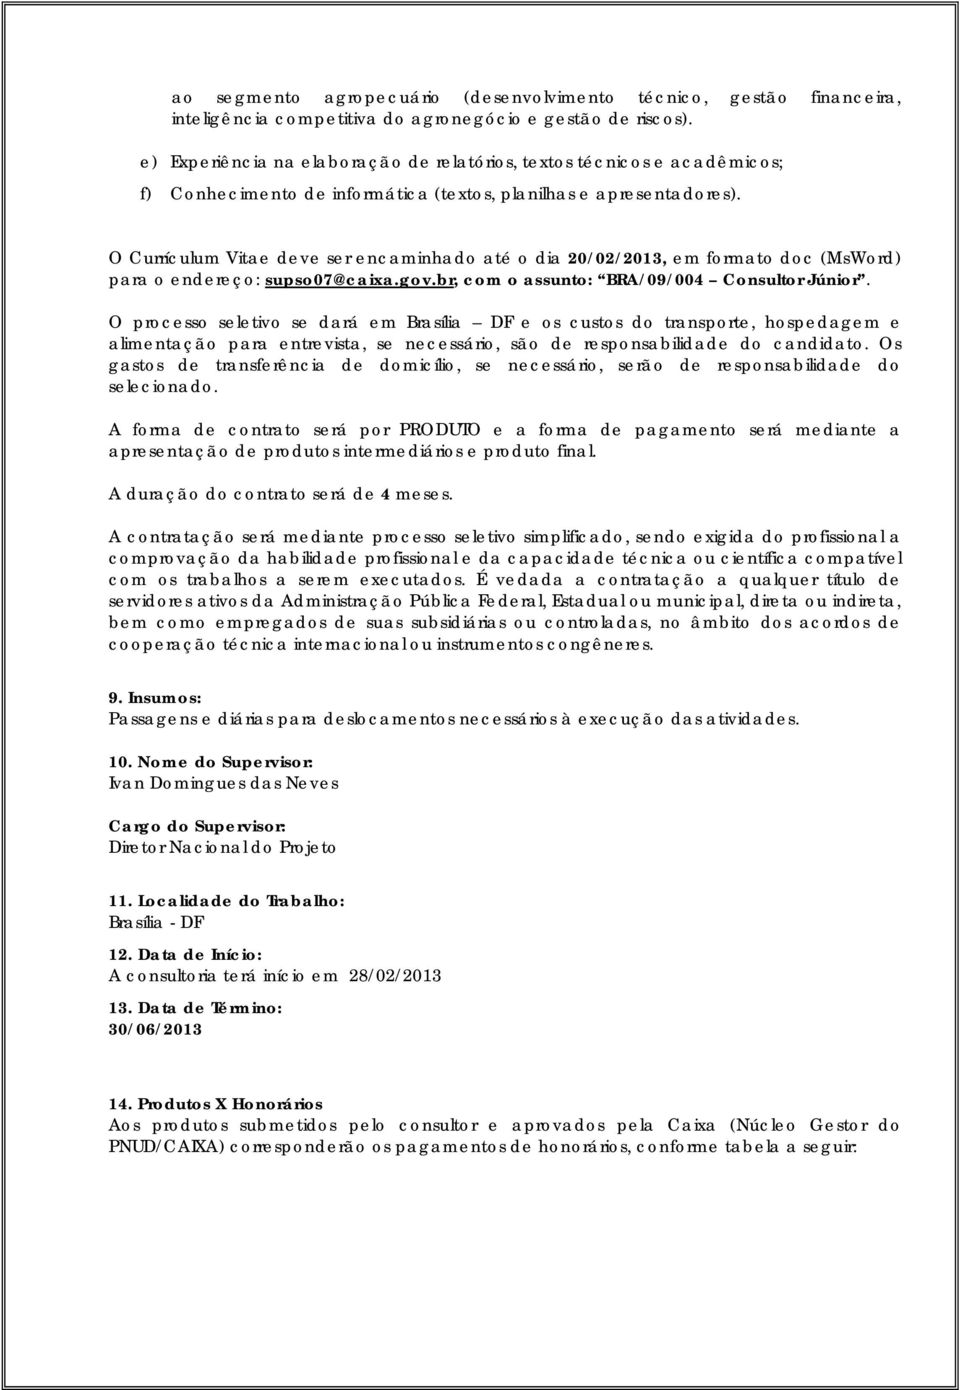 O Currículum Vitae deve ser encaminhado até o dia 20/02/2013, em formato doc (MsWord) para o endereço: supso07@caixa.gov.br, com o assunto: BRA/09/004 Consultor Júnior.